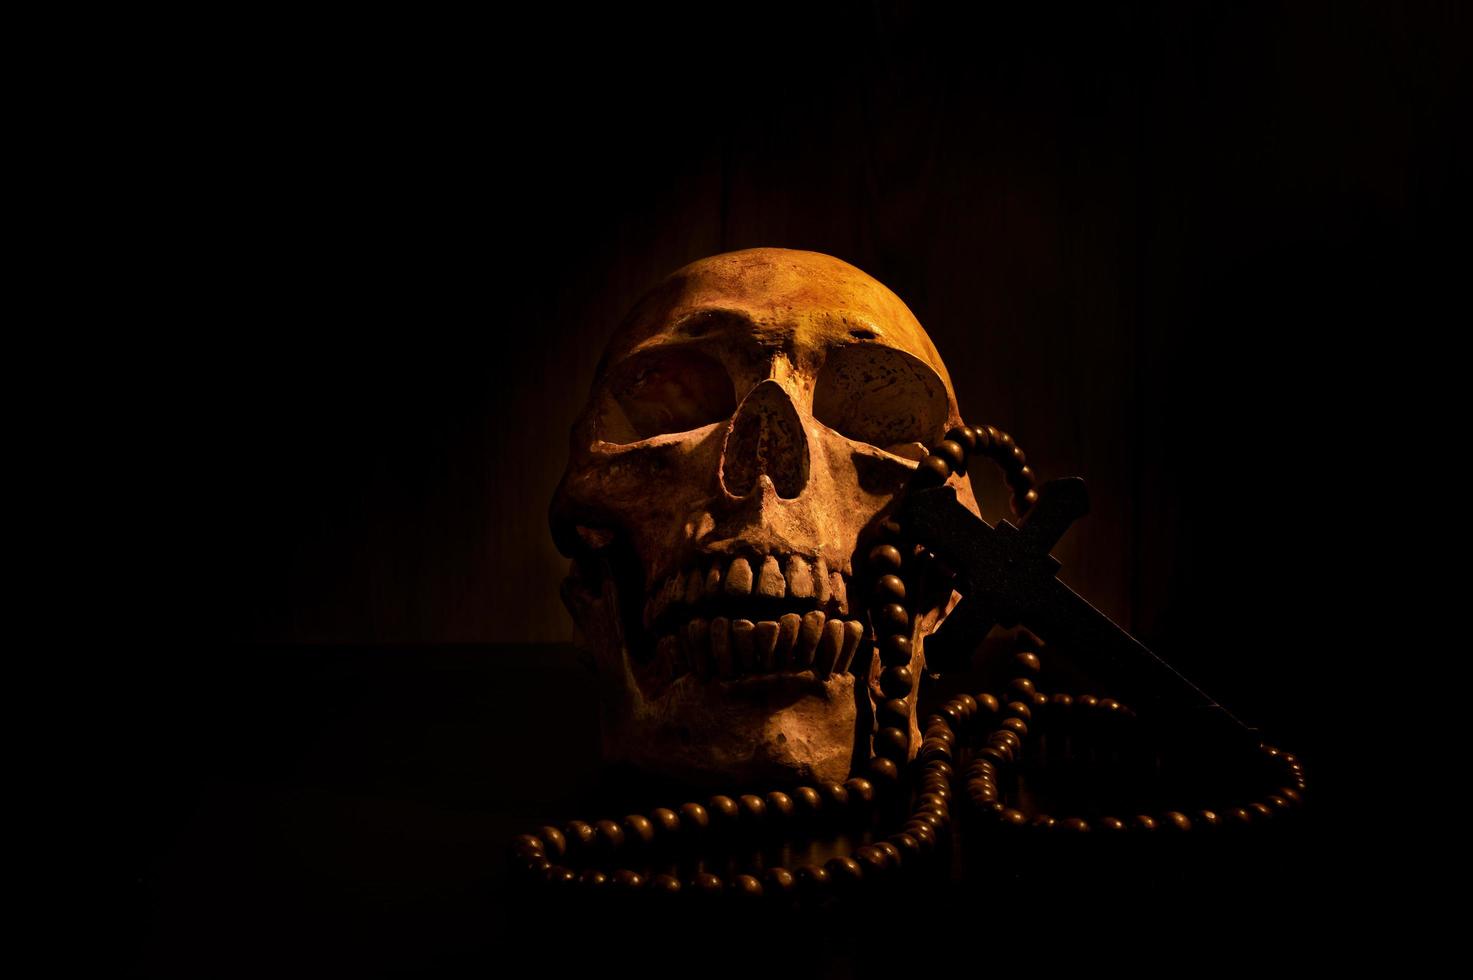 ainda arte de vida de um crânio humano e talão em um fundo preto foto